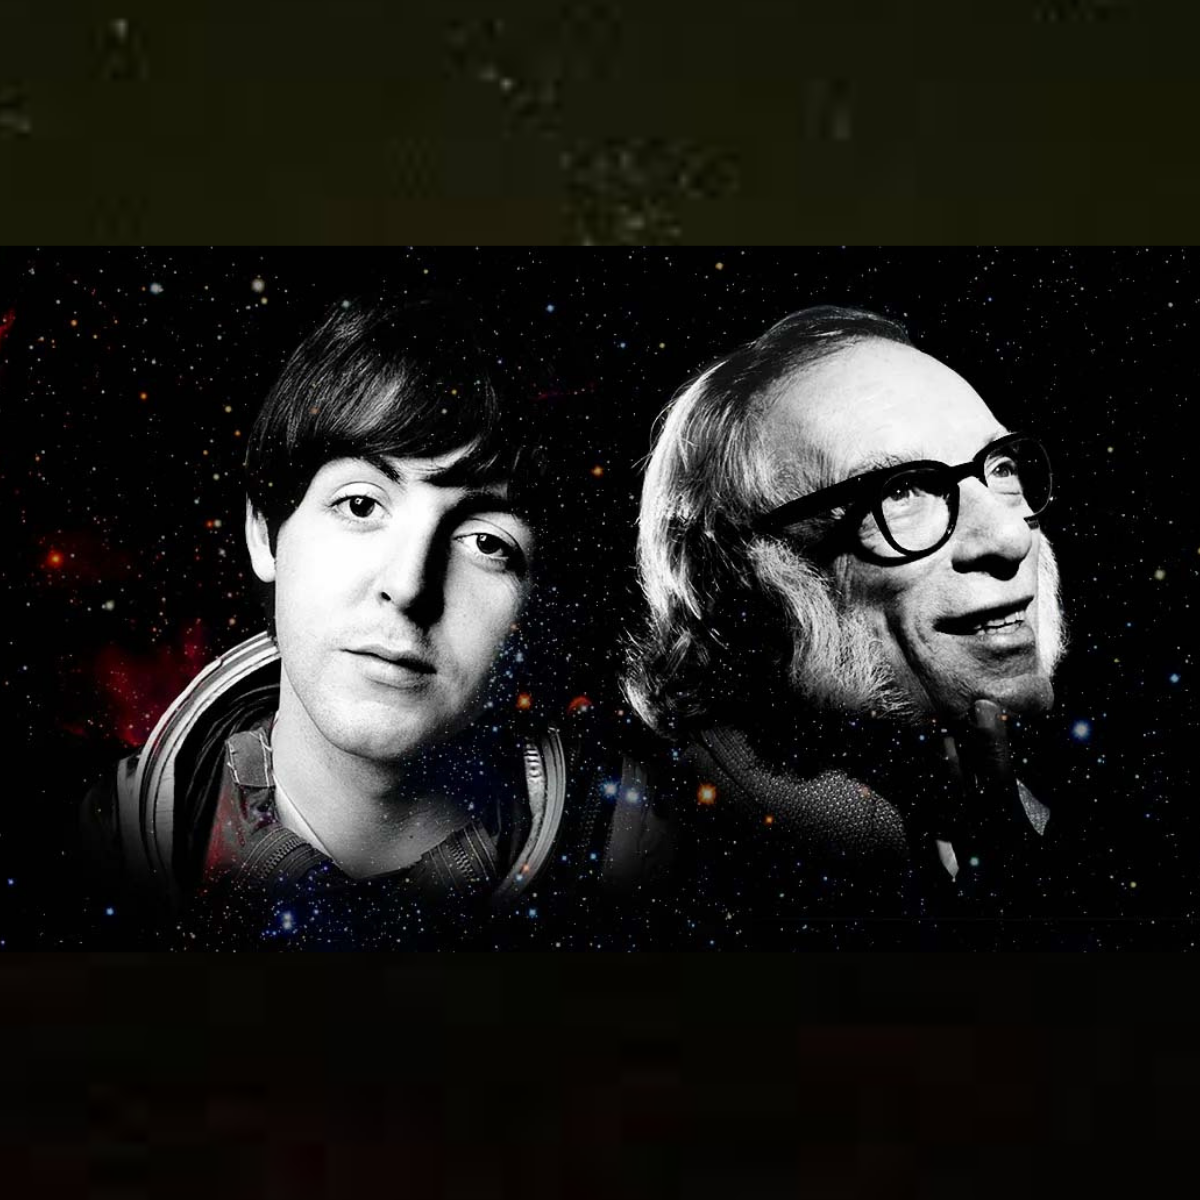 Isak Asimov i Pol Makartni izvor: codigoespagueti.com